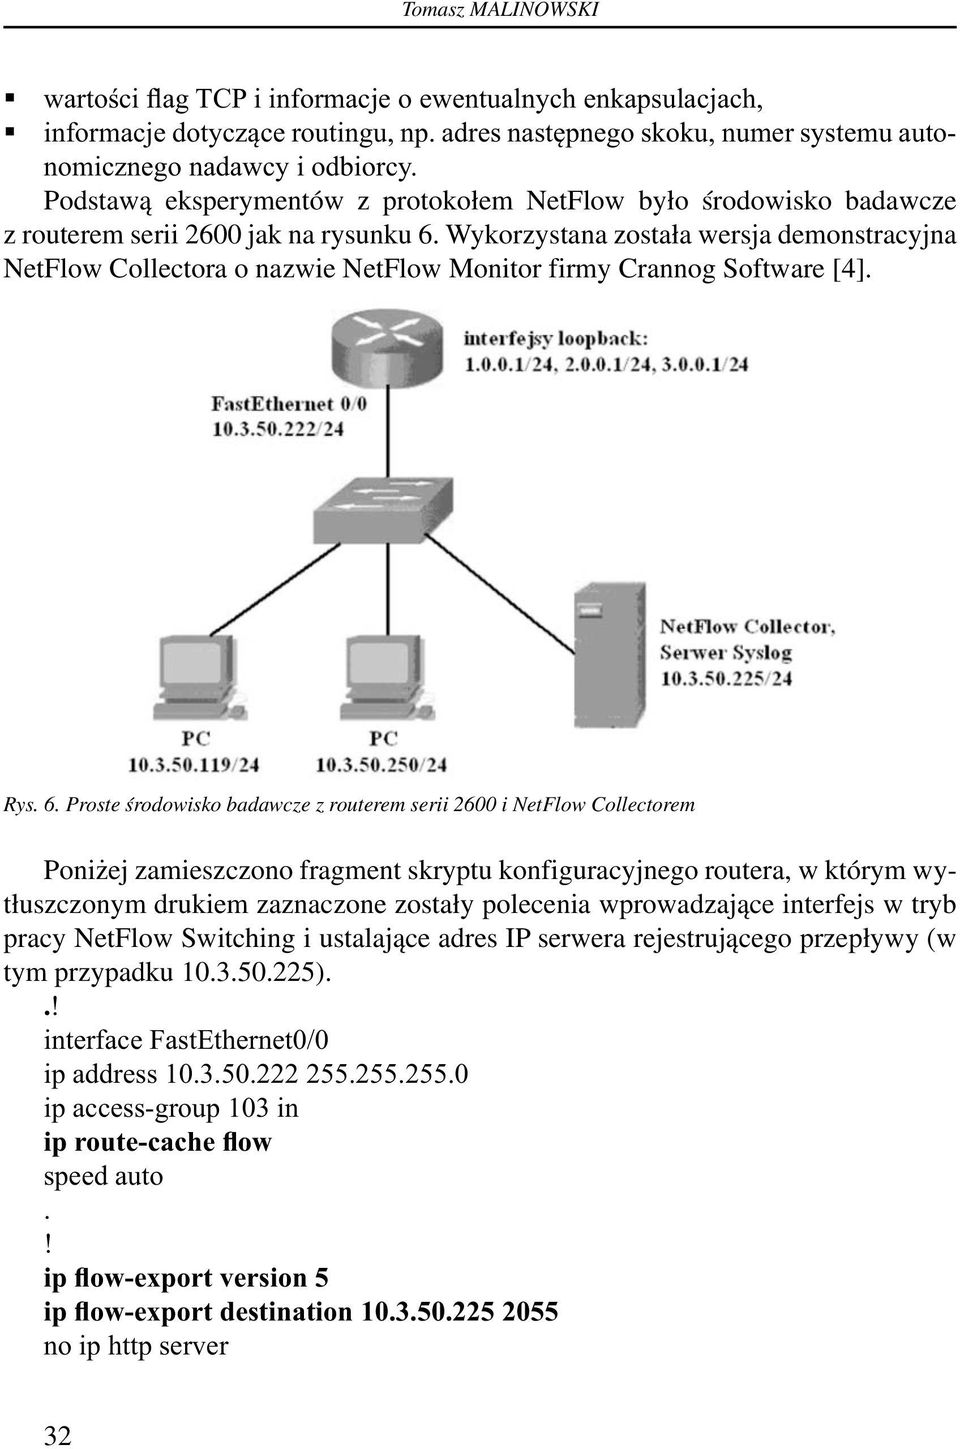 Wykorzystana została wersja demonstracyjna NetFlow Collectora o nazwie NetFlow Monitor firmy Crannog Software [4]. Rys. 6.